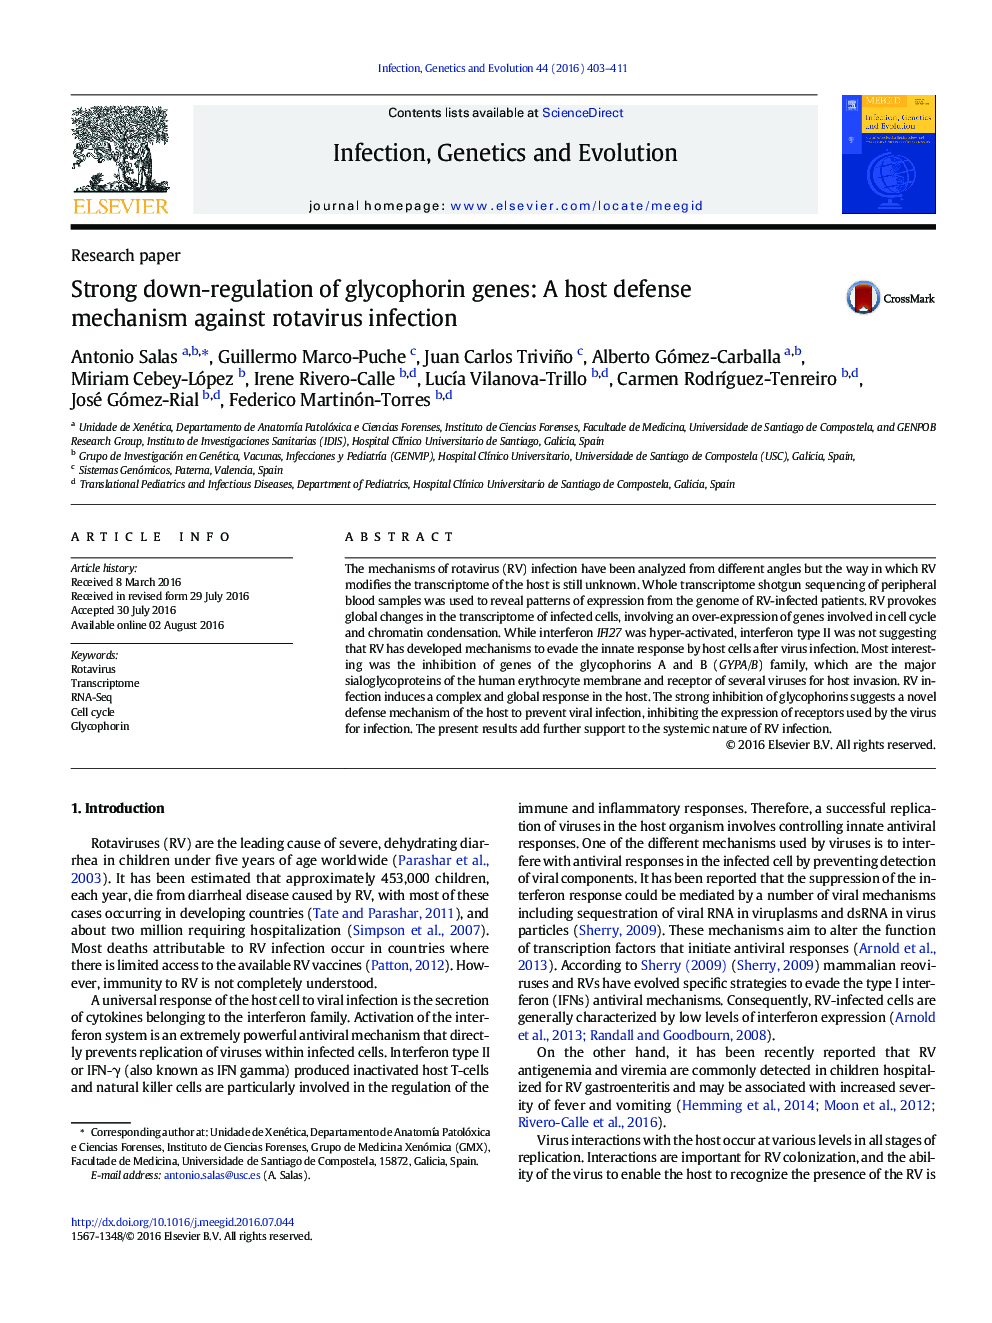 کاهش پایدار ژن های گلیکوفورین: مکانیسم دفاع میزبان در برابر عفونت روتا ویروس 